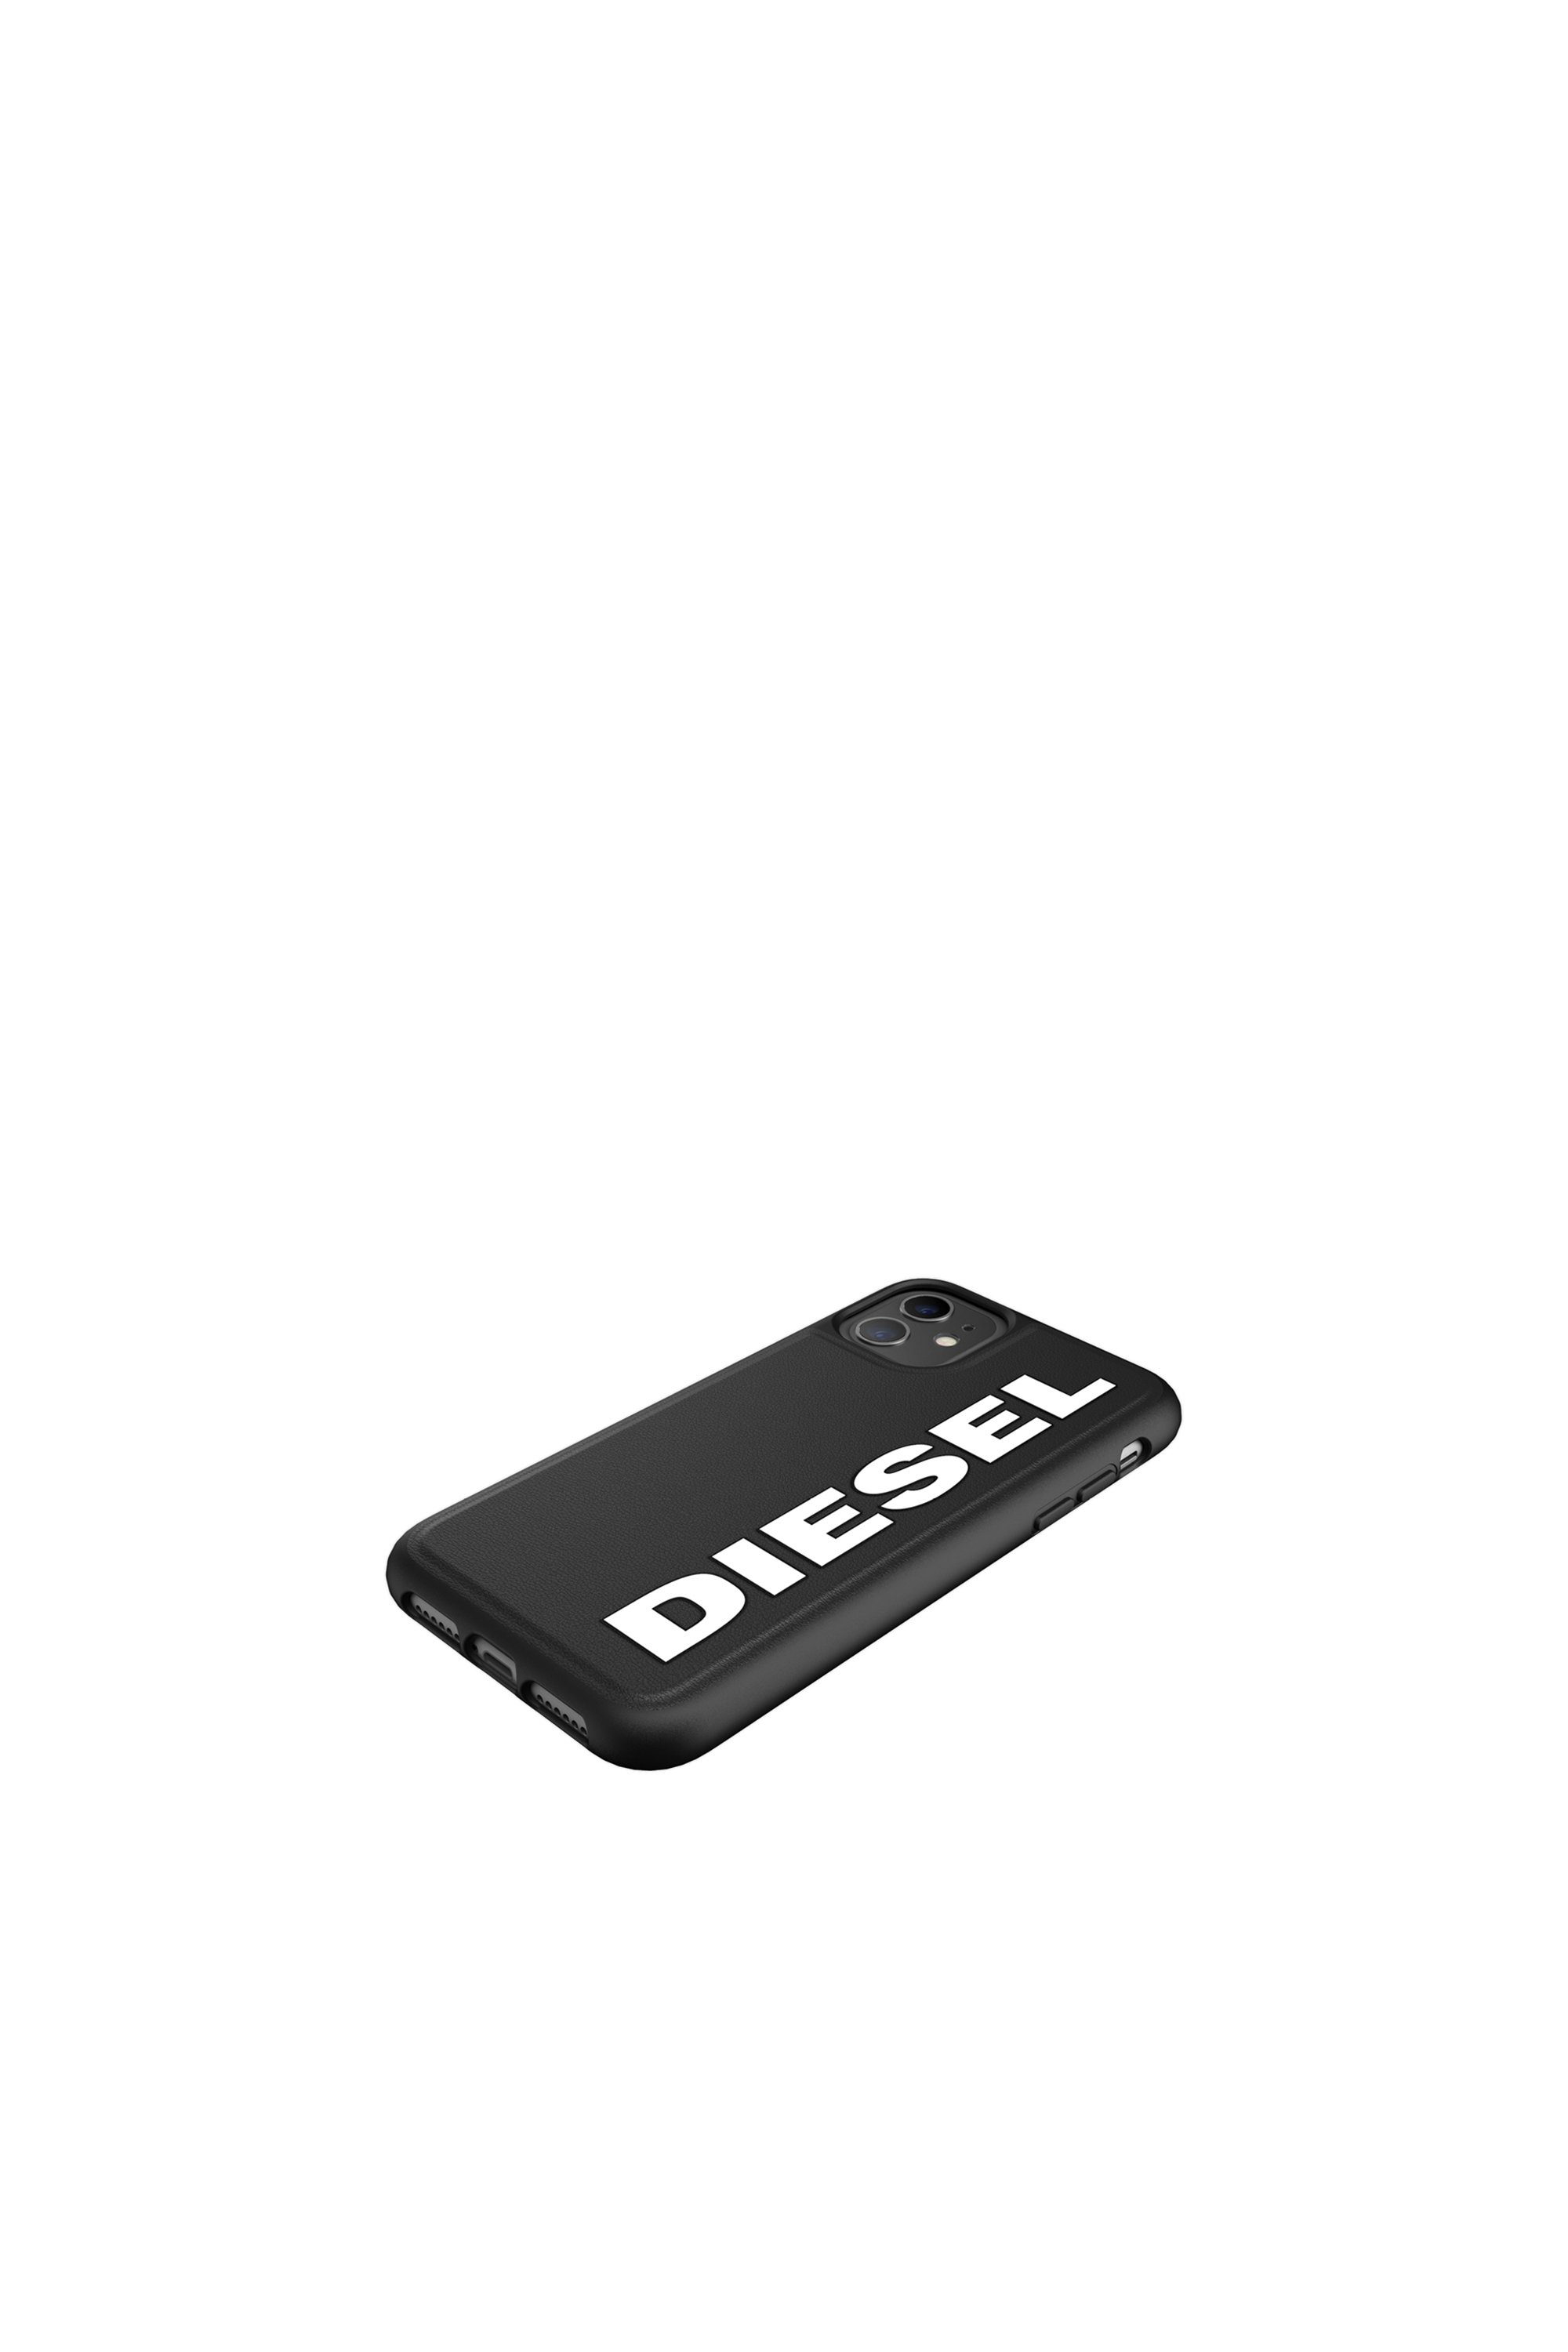 Diesel - 41981, Black - Image 4